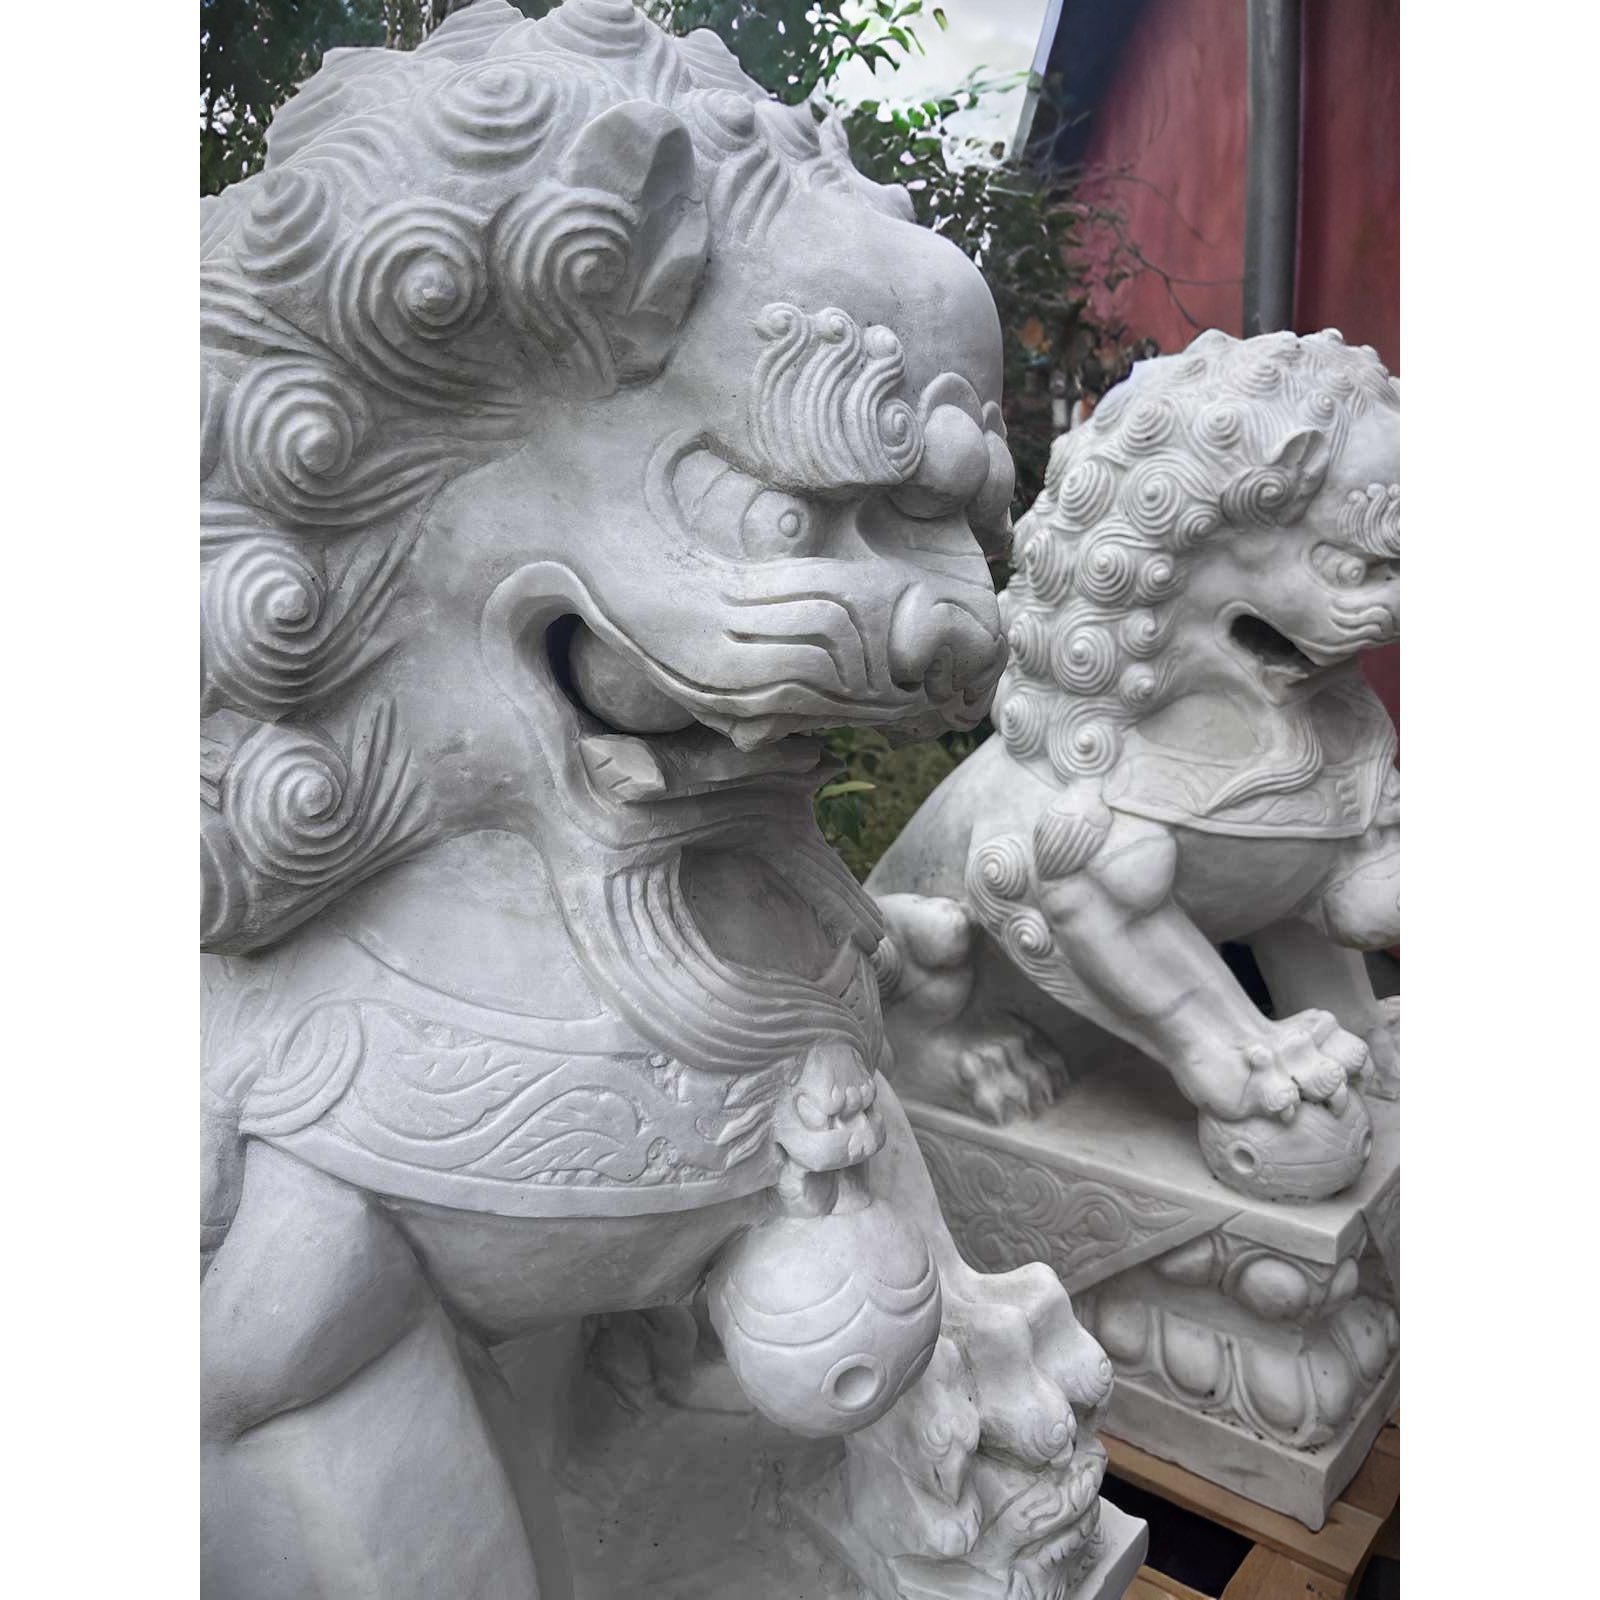 Asien LifeStyle Gartenfigur Wächterlöwen Marmorstein Garten 115cm Steinlöwen China Tempellöwen